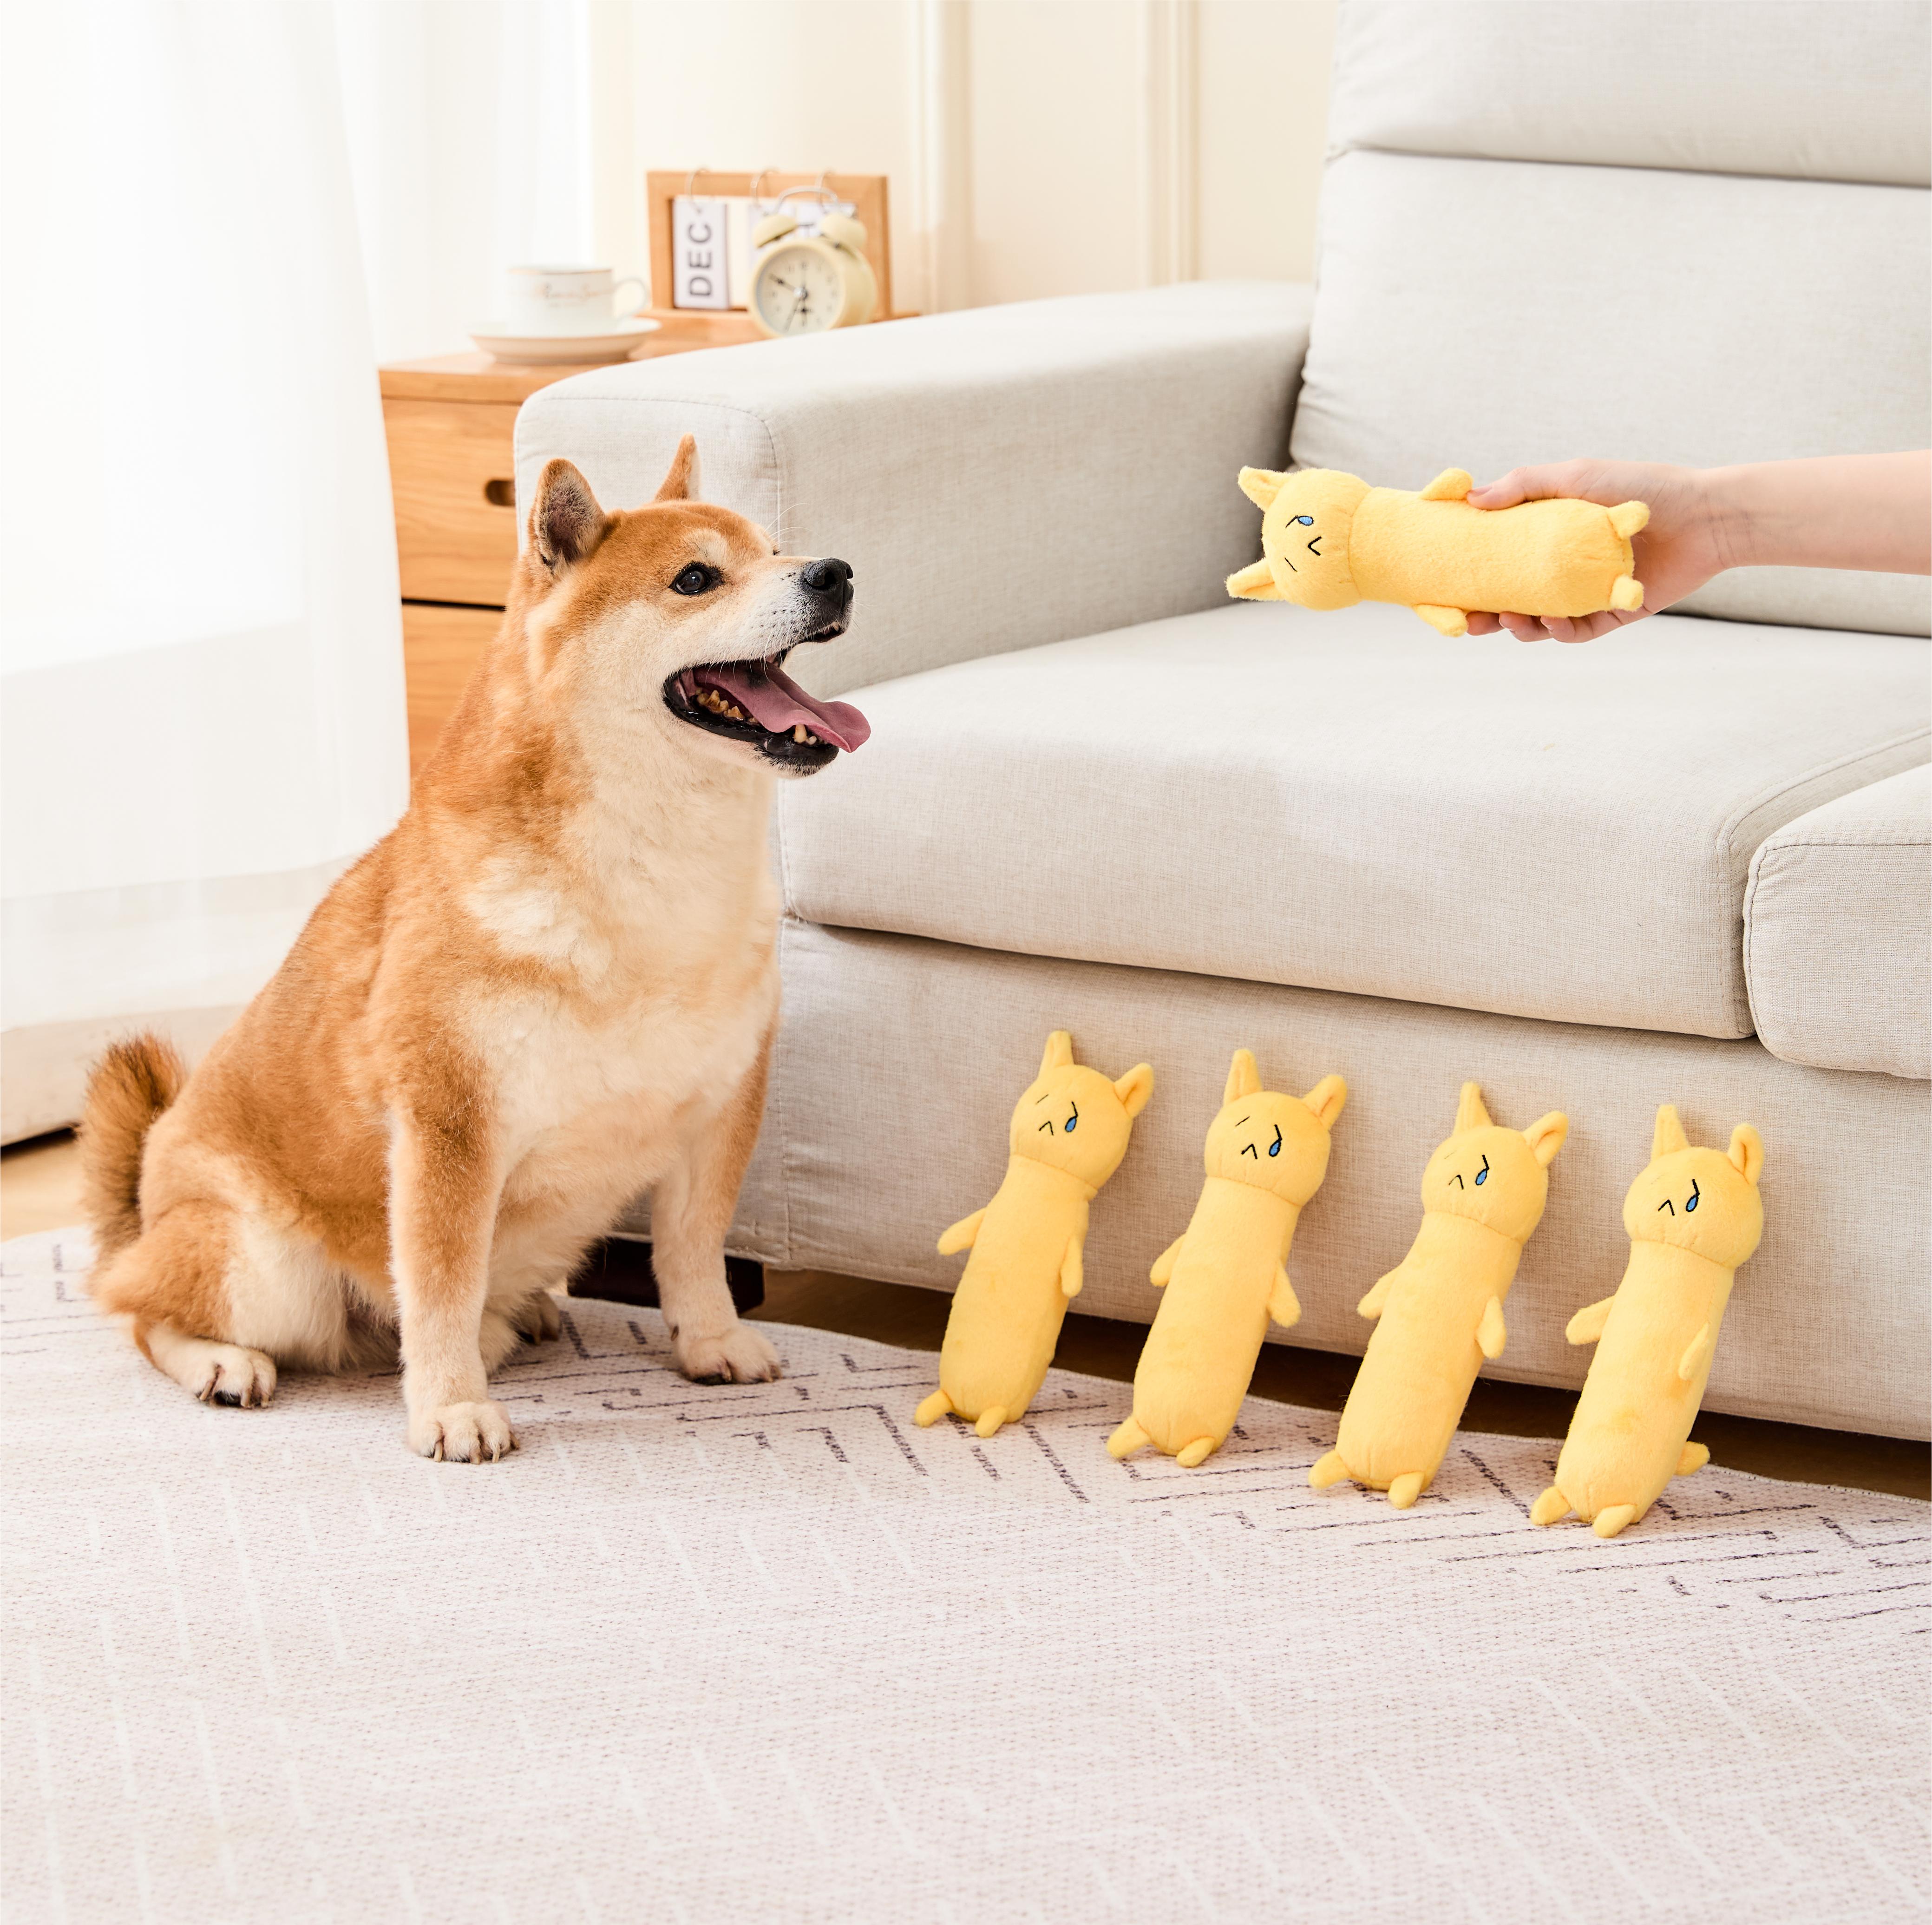 Juguetes chirriantes para perros largos amarillos, juguetes interactivos para perros, juguetes duros para perros, mordedores de juguete para perros, juguetes suaves adorables personalizados para razas pequeñas